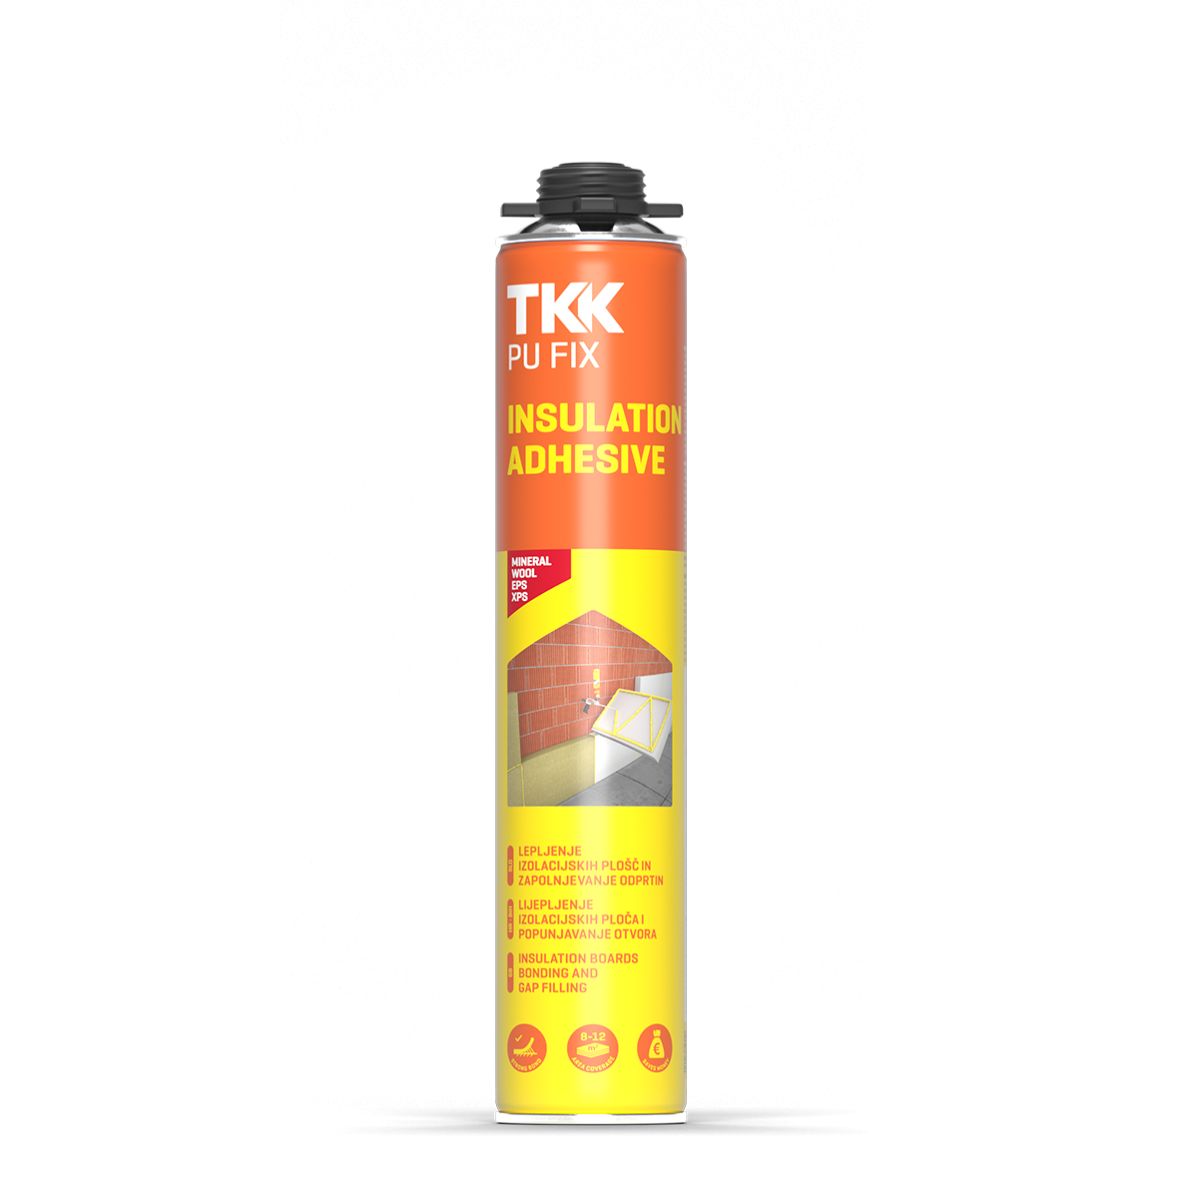 TKK Pu Fix Insulation Adhesive G